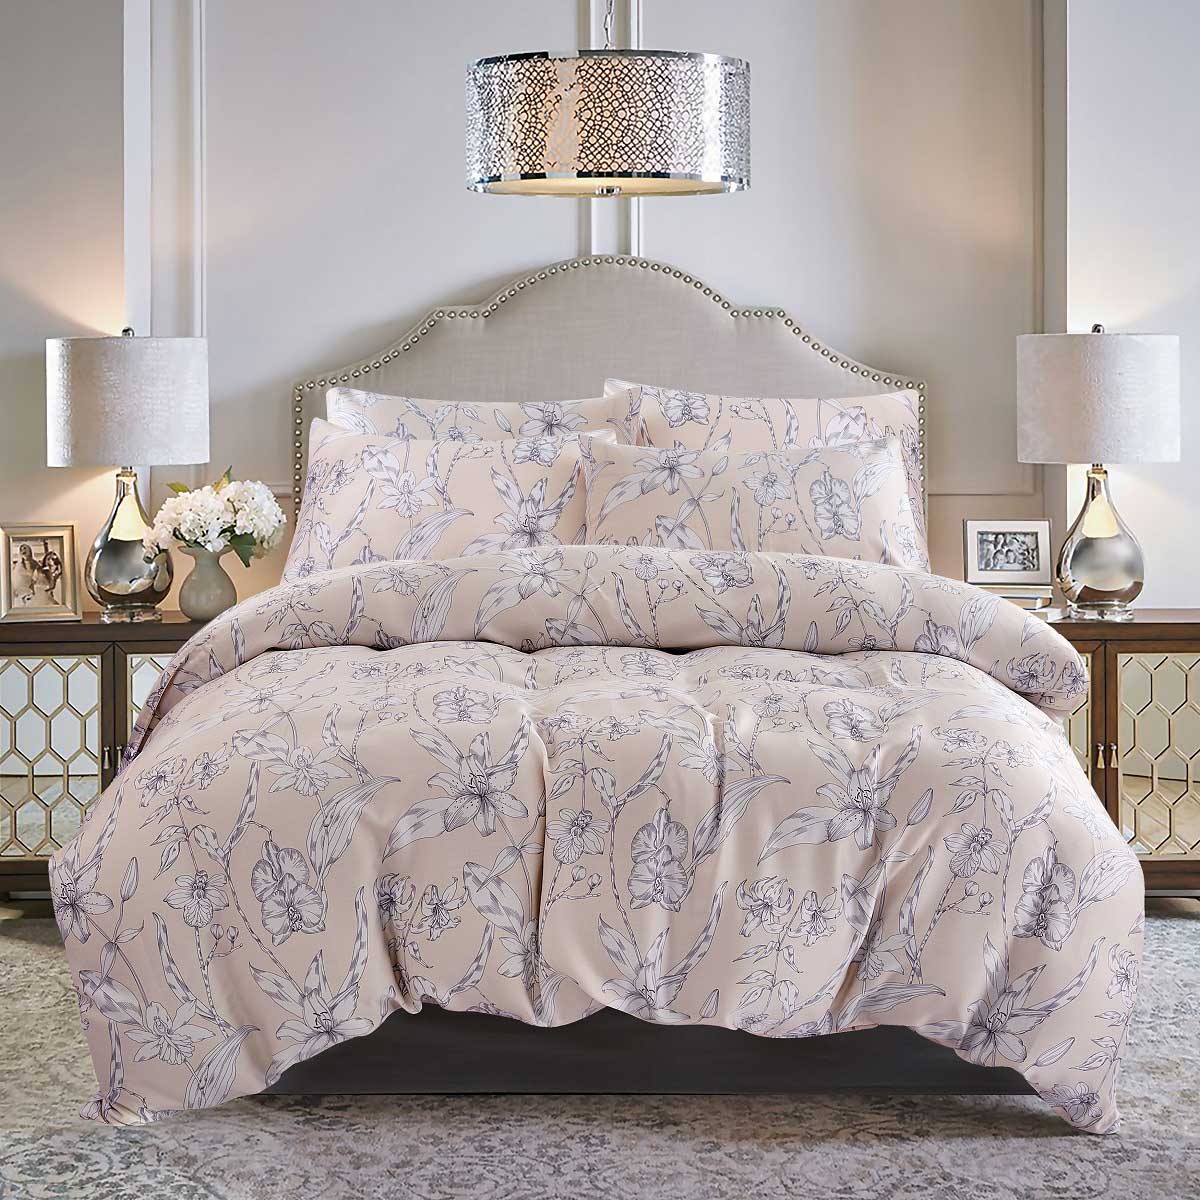 Комплект постельного белья 1,5-спальный Pappel big flower комплект постельного белья евро pappel flower field розовый